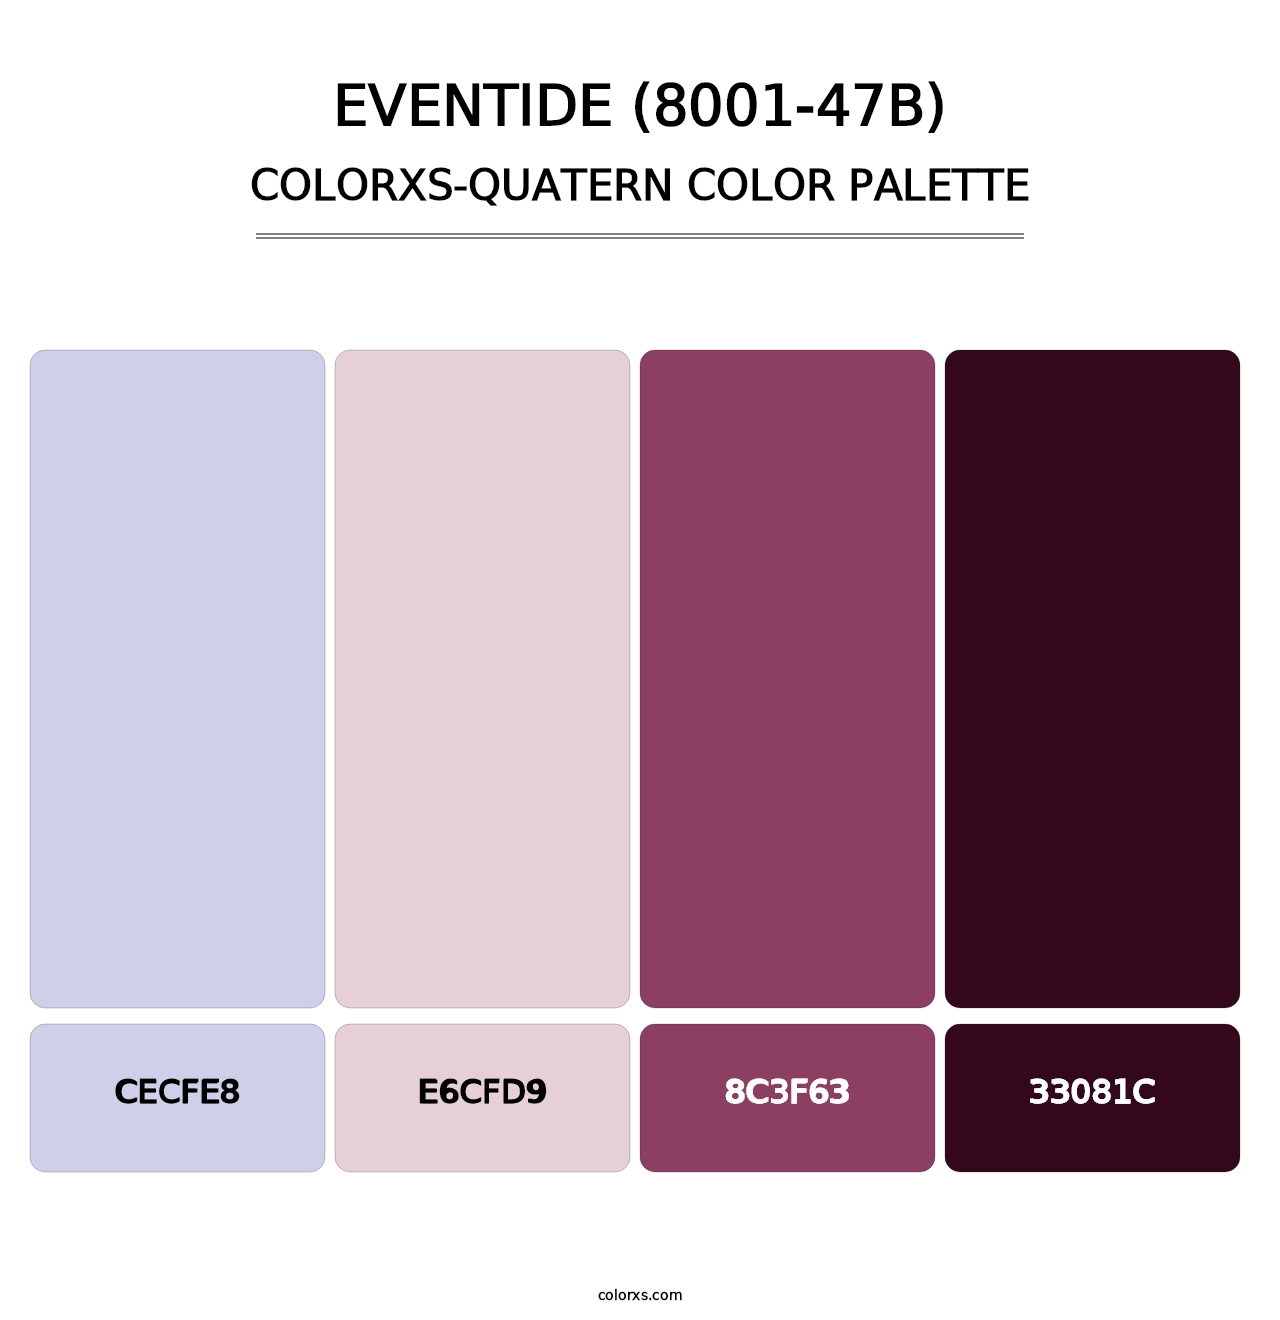 Eventide (8001-47B) - Colorxs Quatern Palette